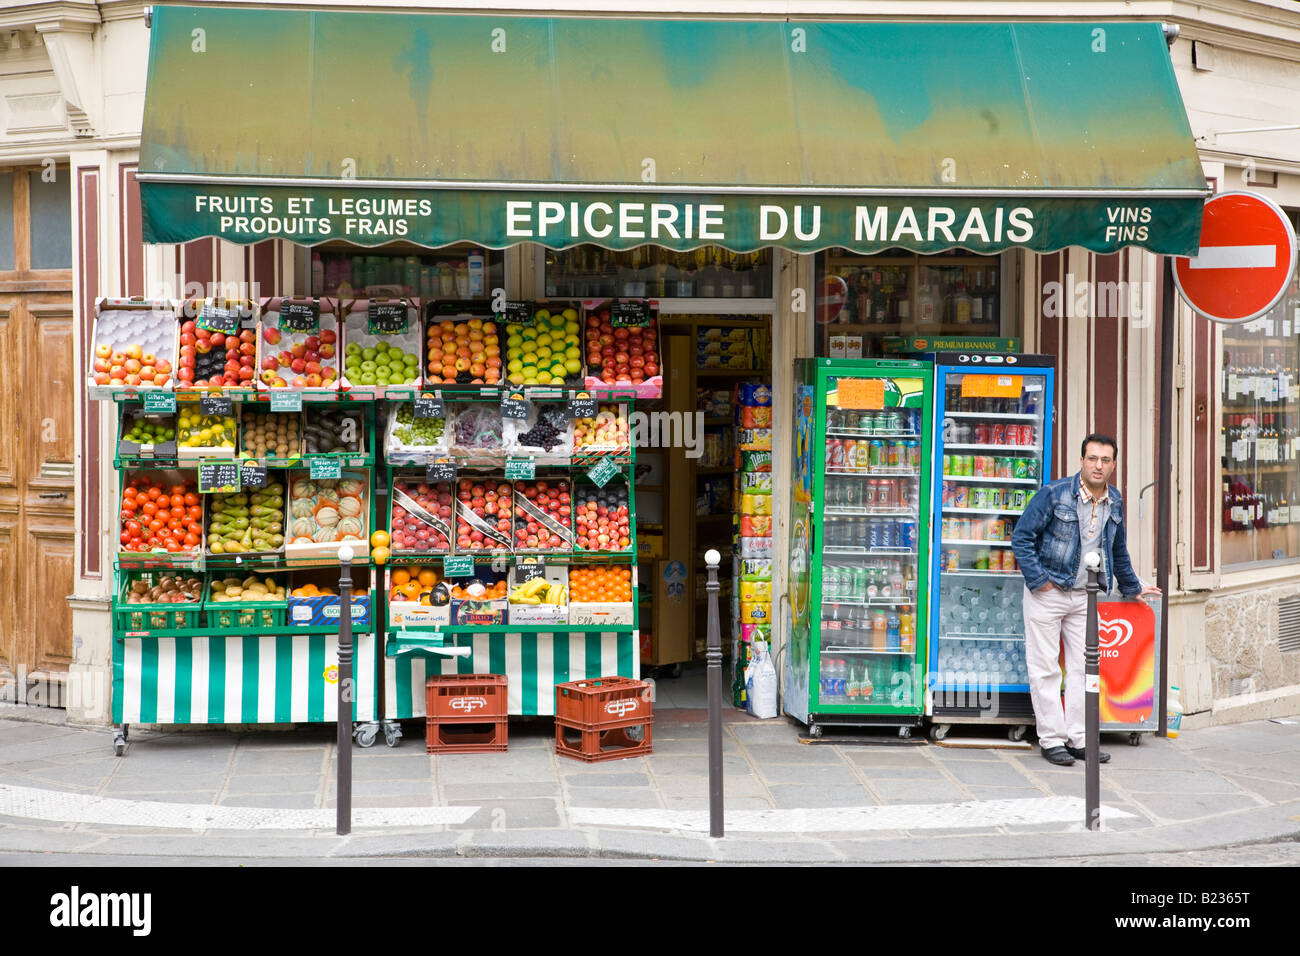 Epicerie in Le Marais district of Paris Stock Photo - Alamy